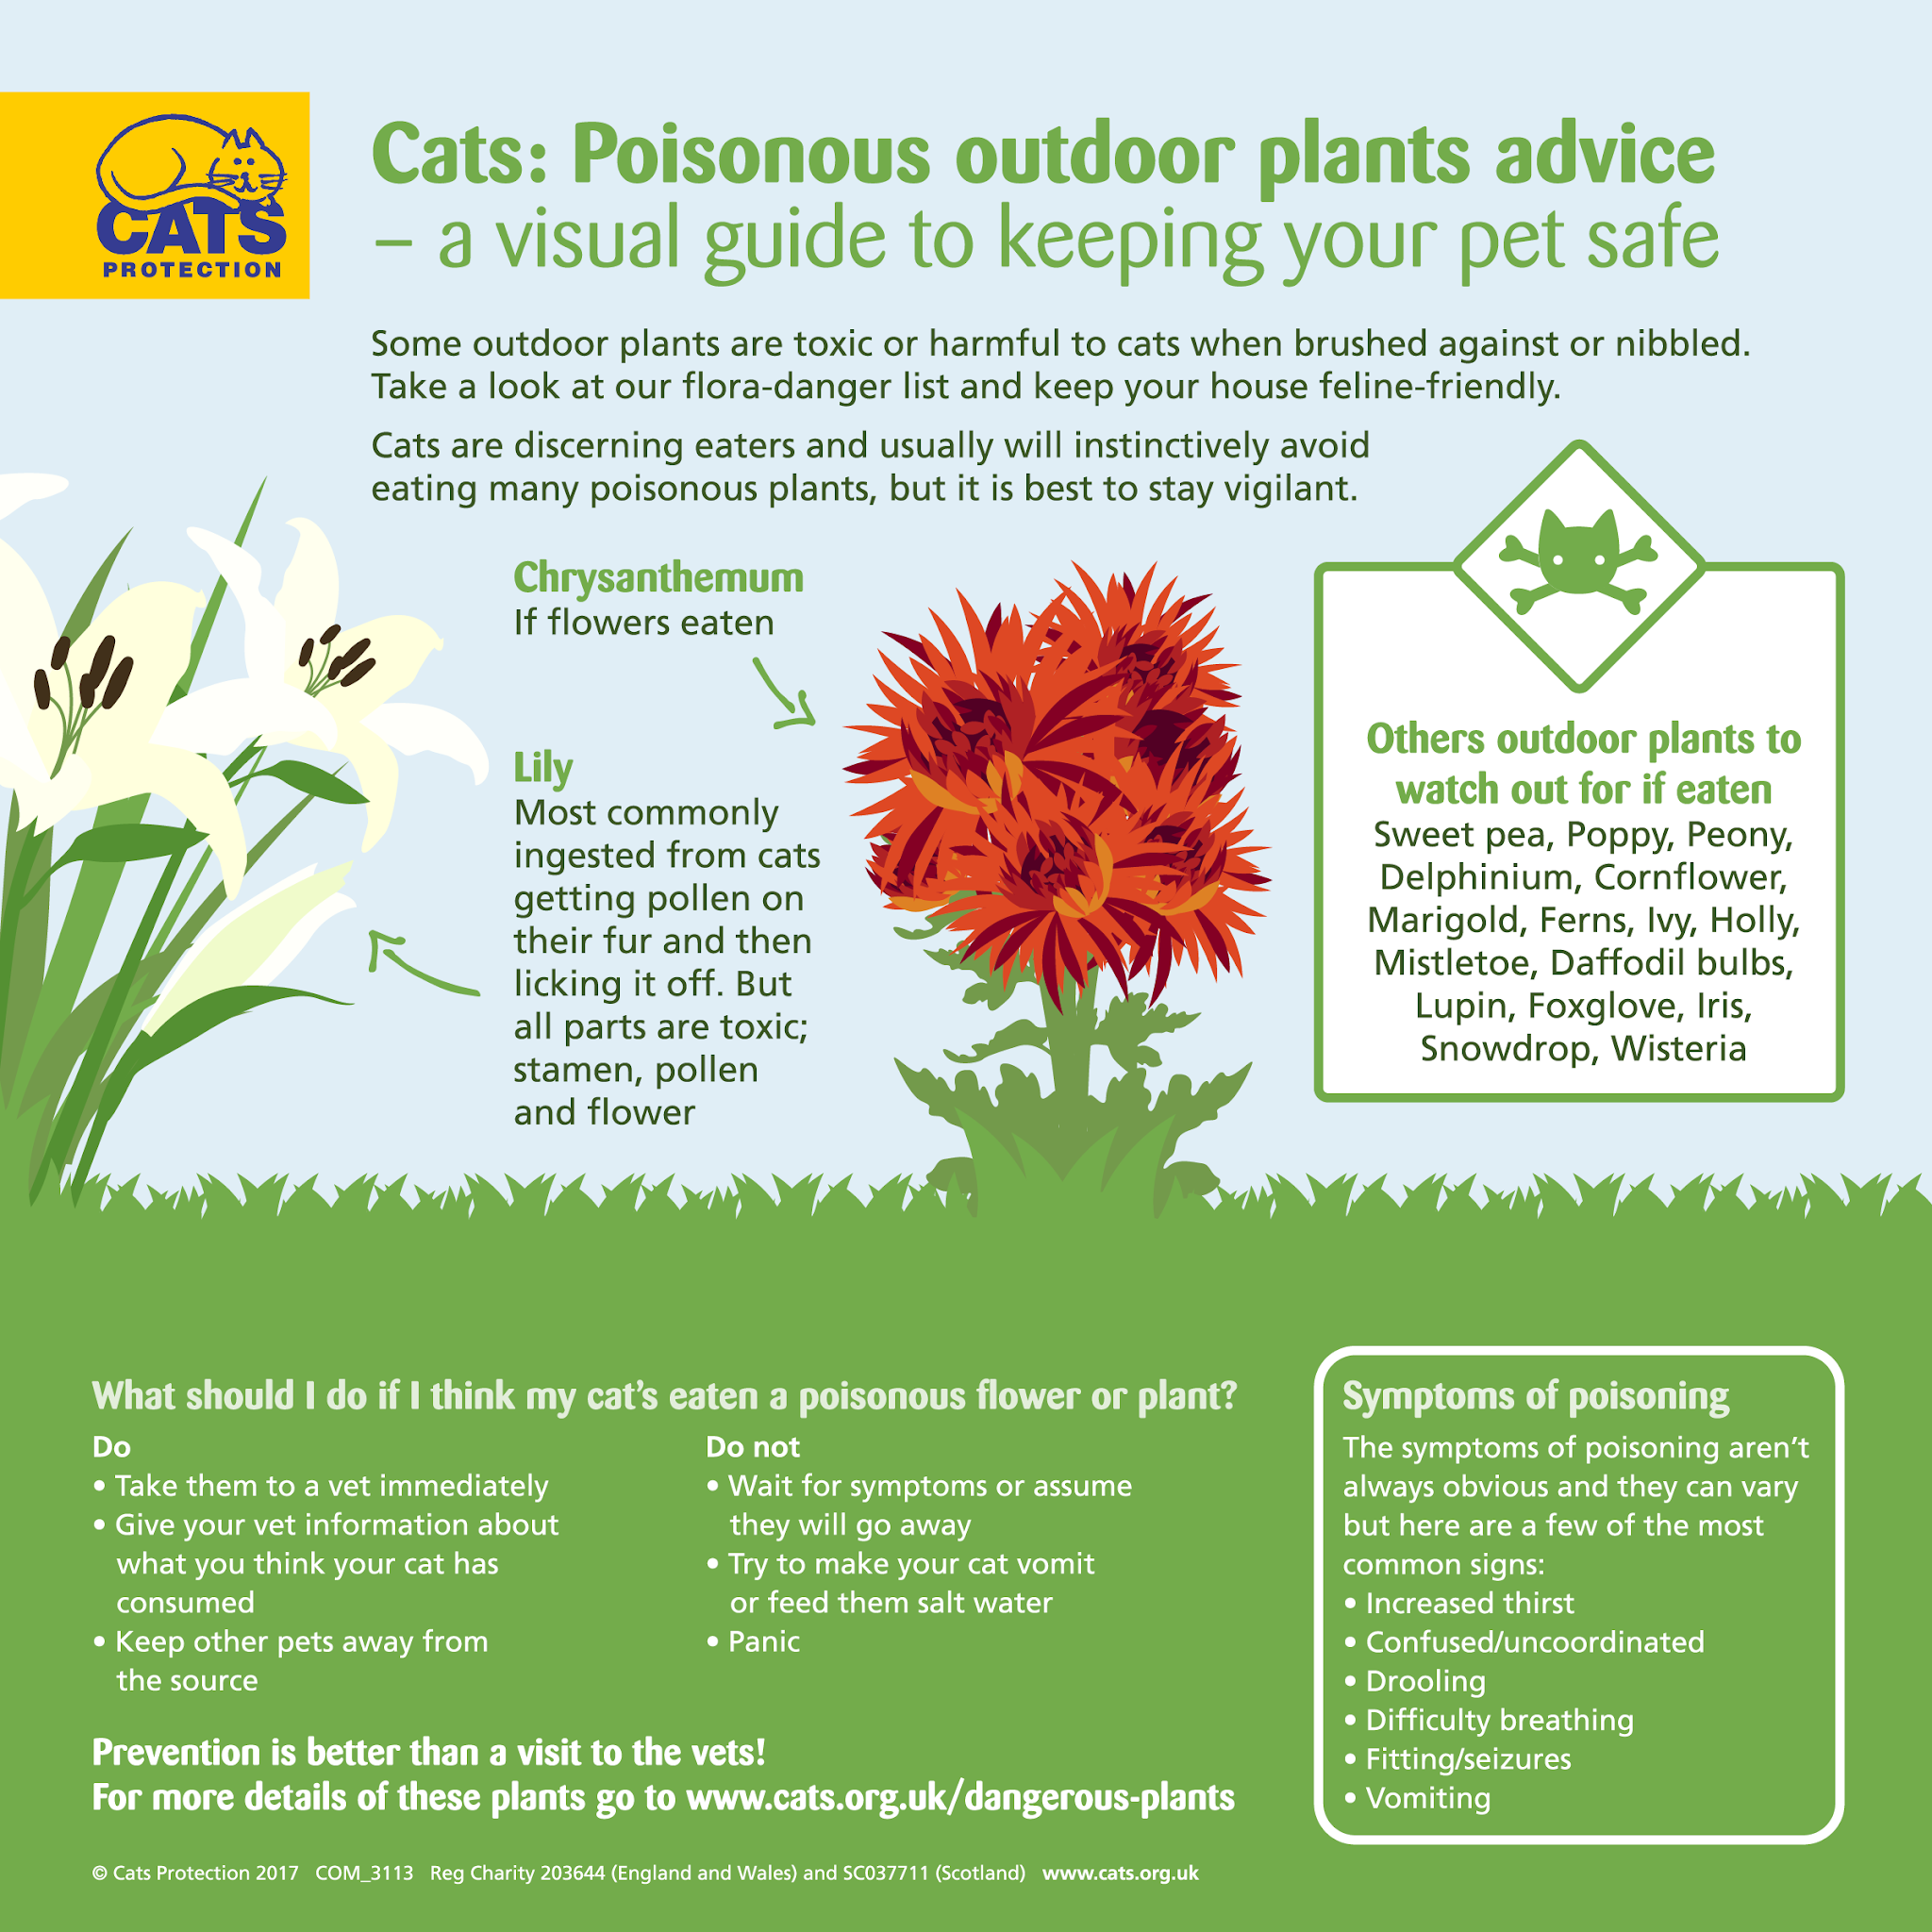 有毒な庭の植物を避け、猫を安全に保つ。